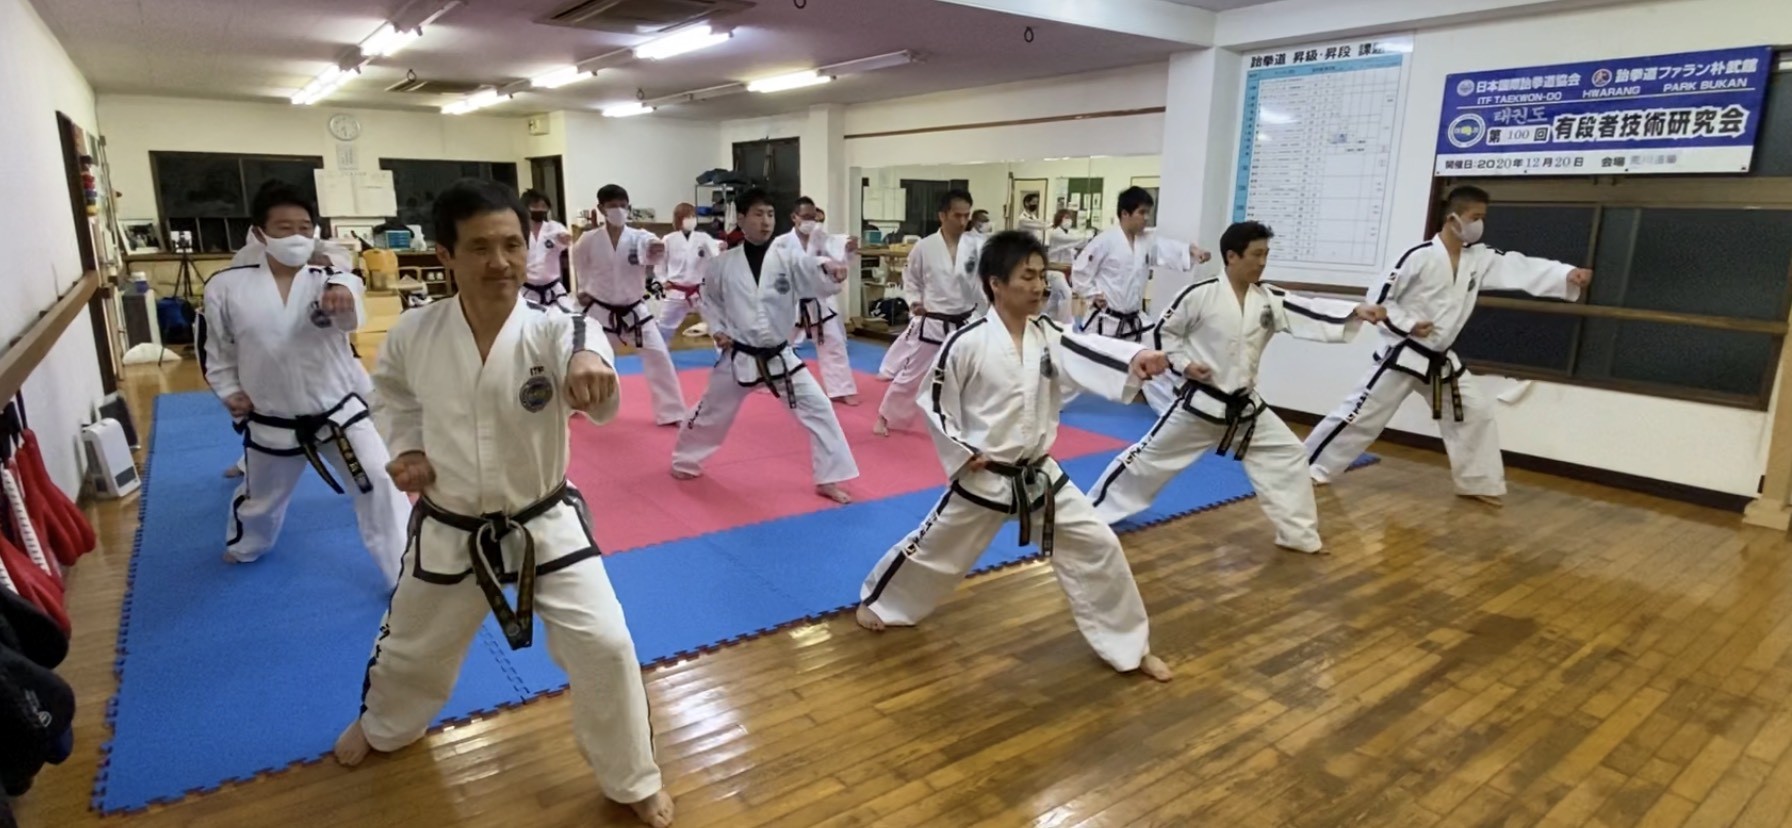 taekwondo-arakawa1 (5)